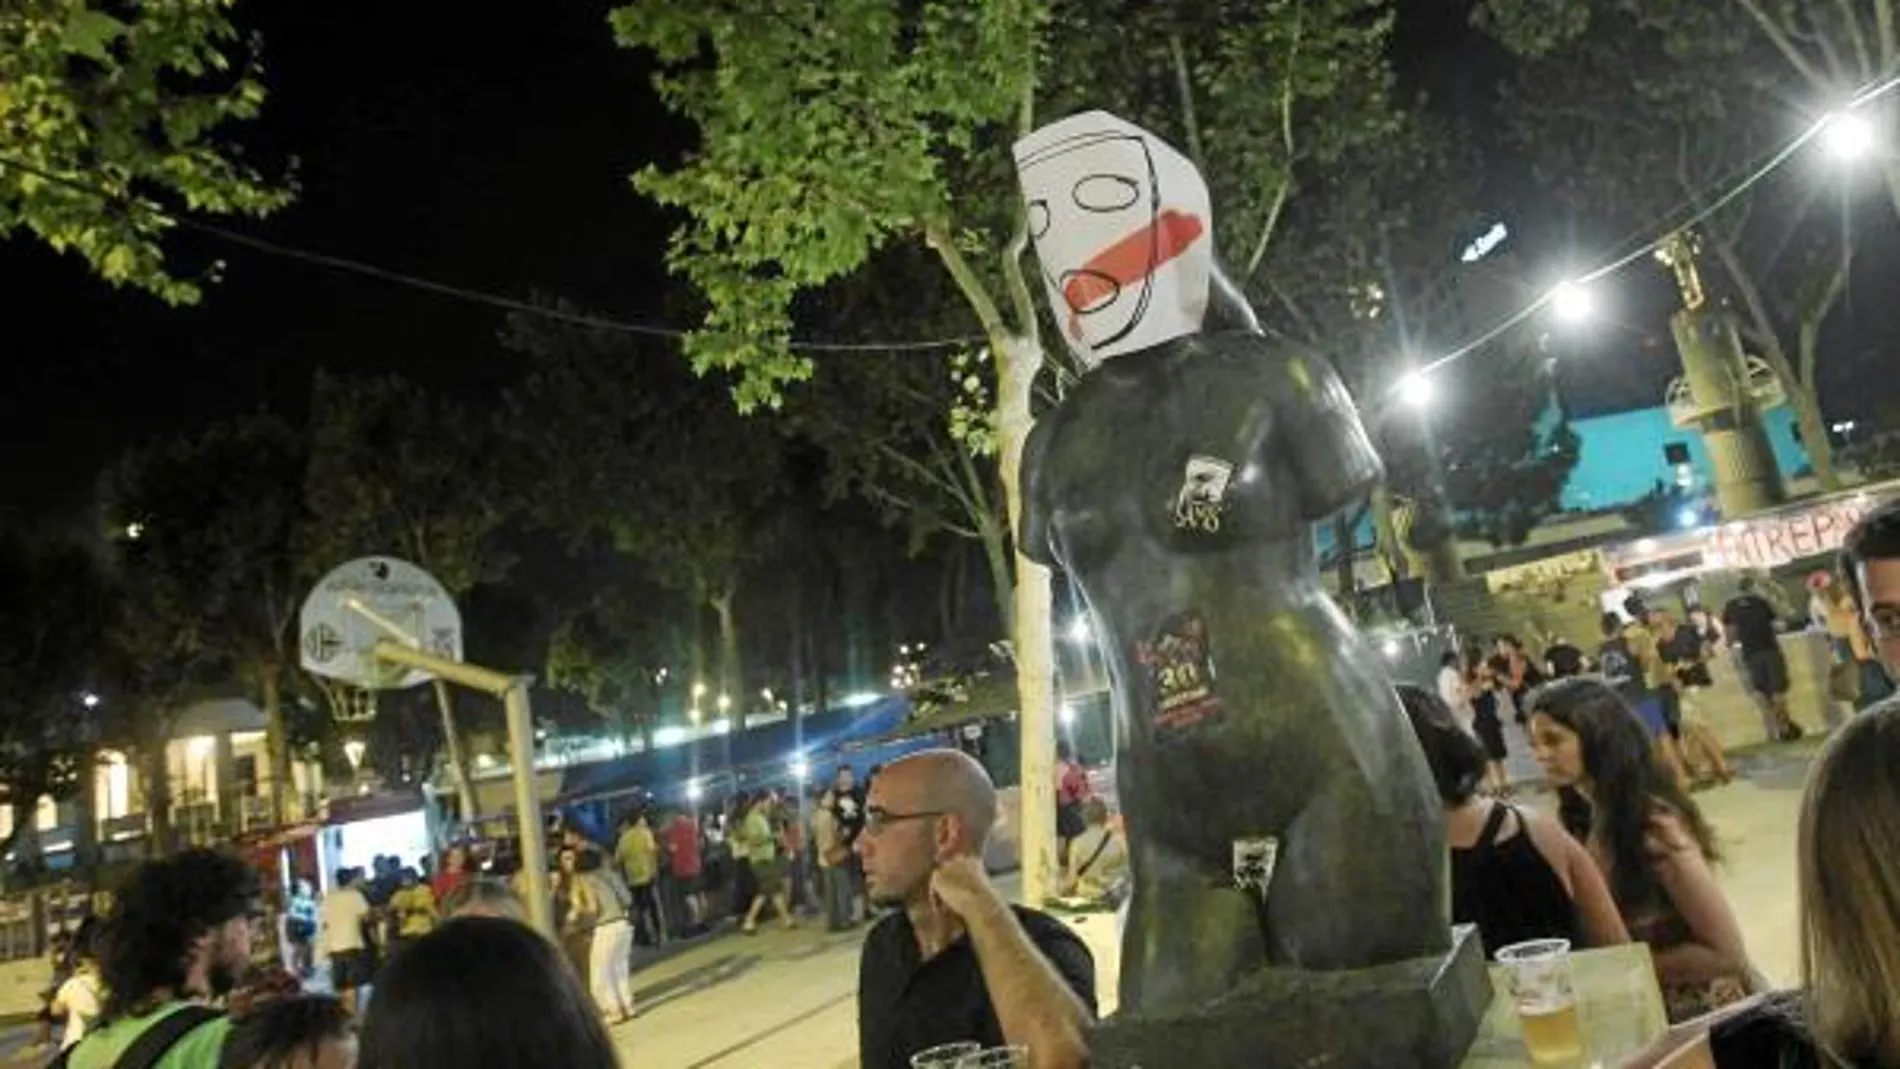 Los convocantes del «brindis» mostraron su desacuerdo ante la prohibició con carteles de caras con las bocas tapadas